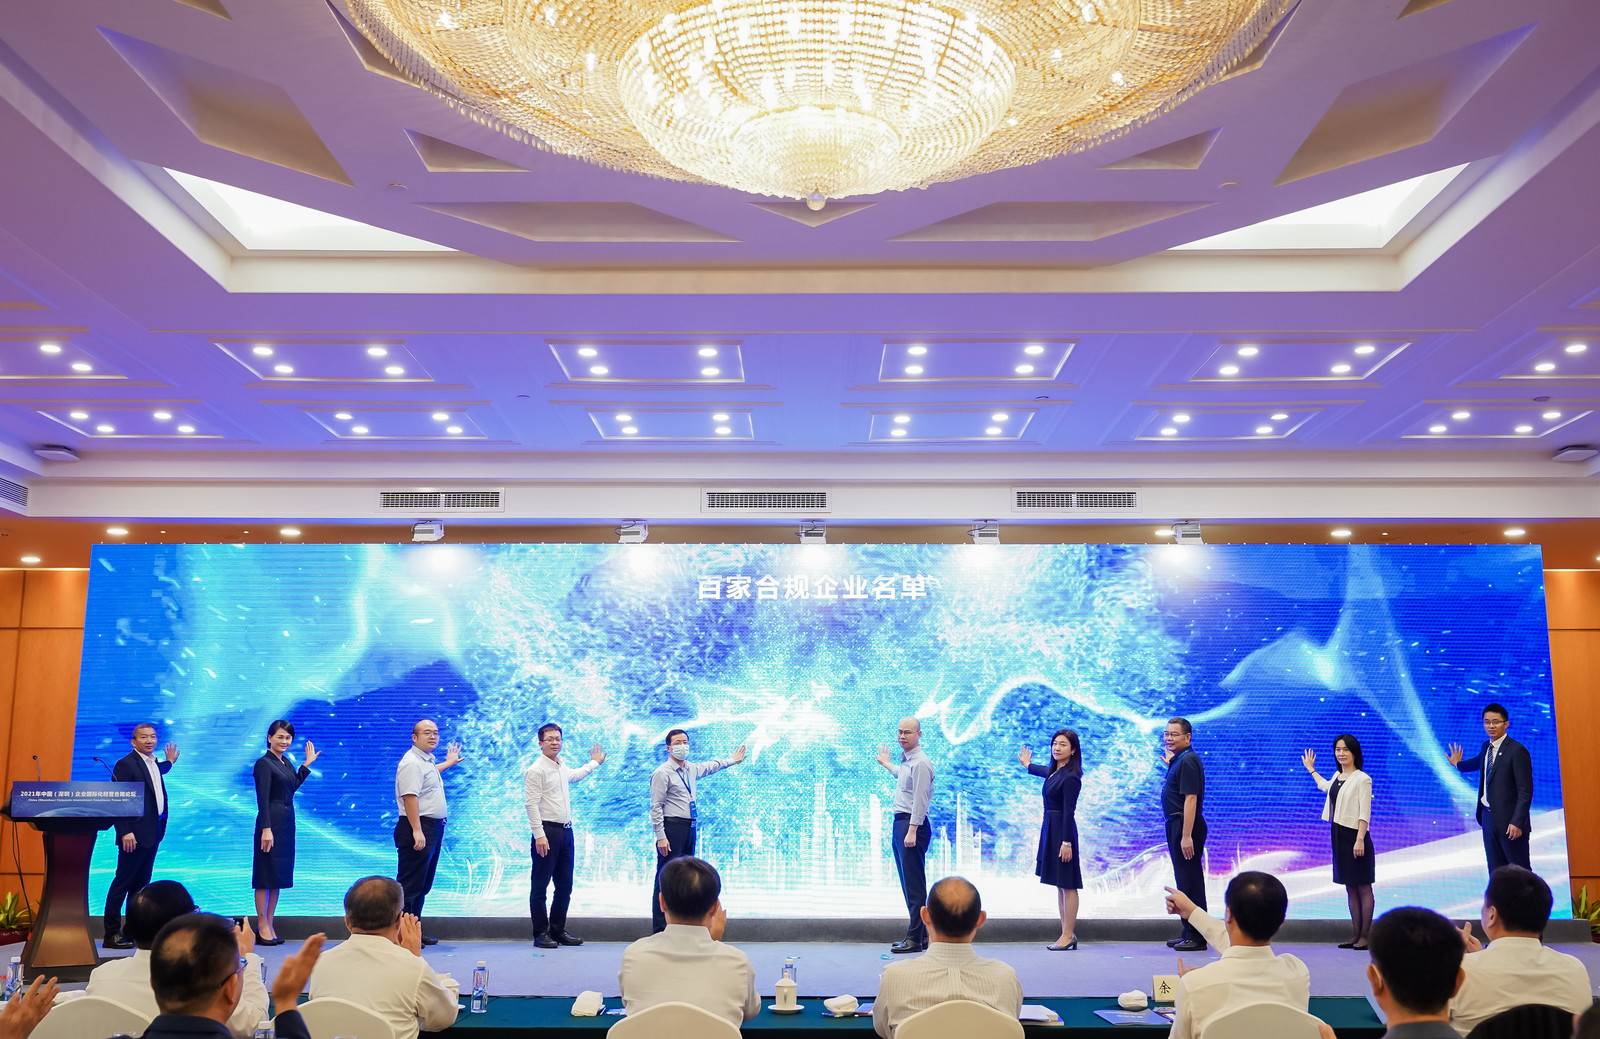 左一尊龙凯时首席合规官-百家合规宣言代表企业 (2).jpg